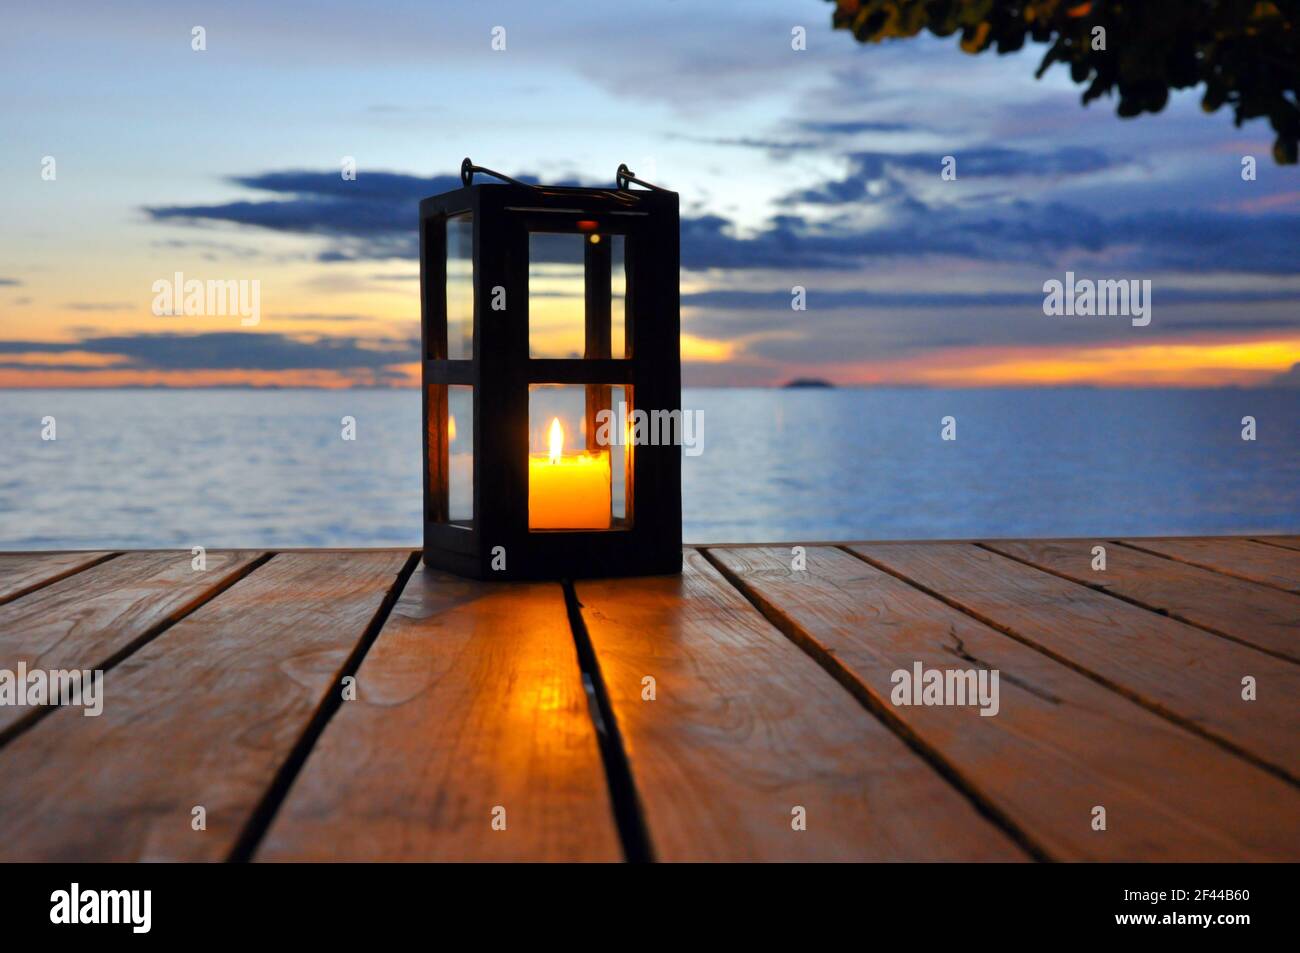 Lanterna di mare immagini e fotografie stock ad alta risoluzione - Alamy